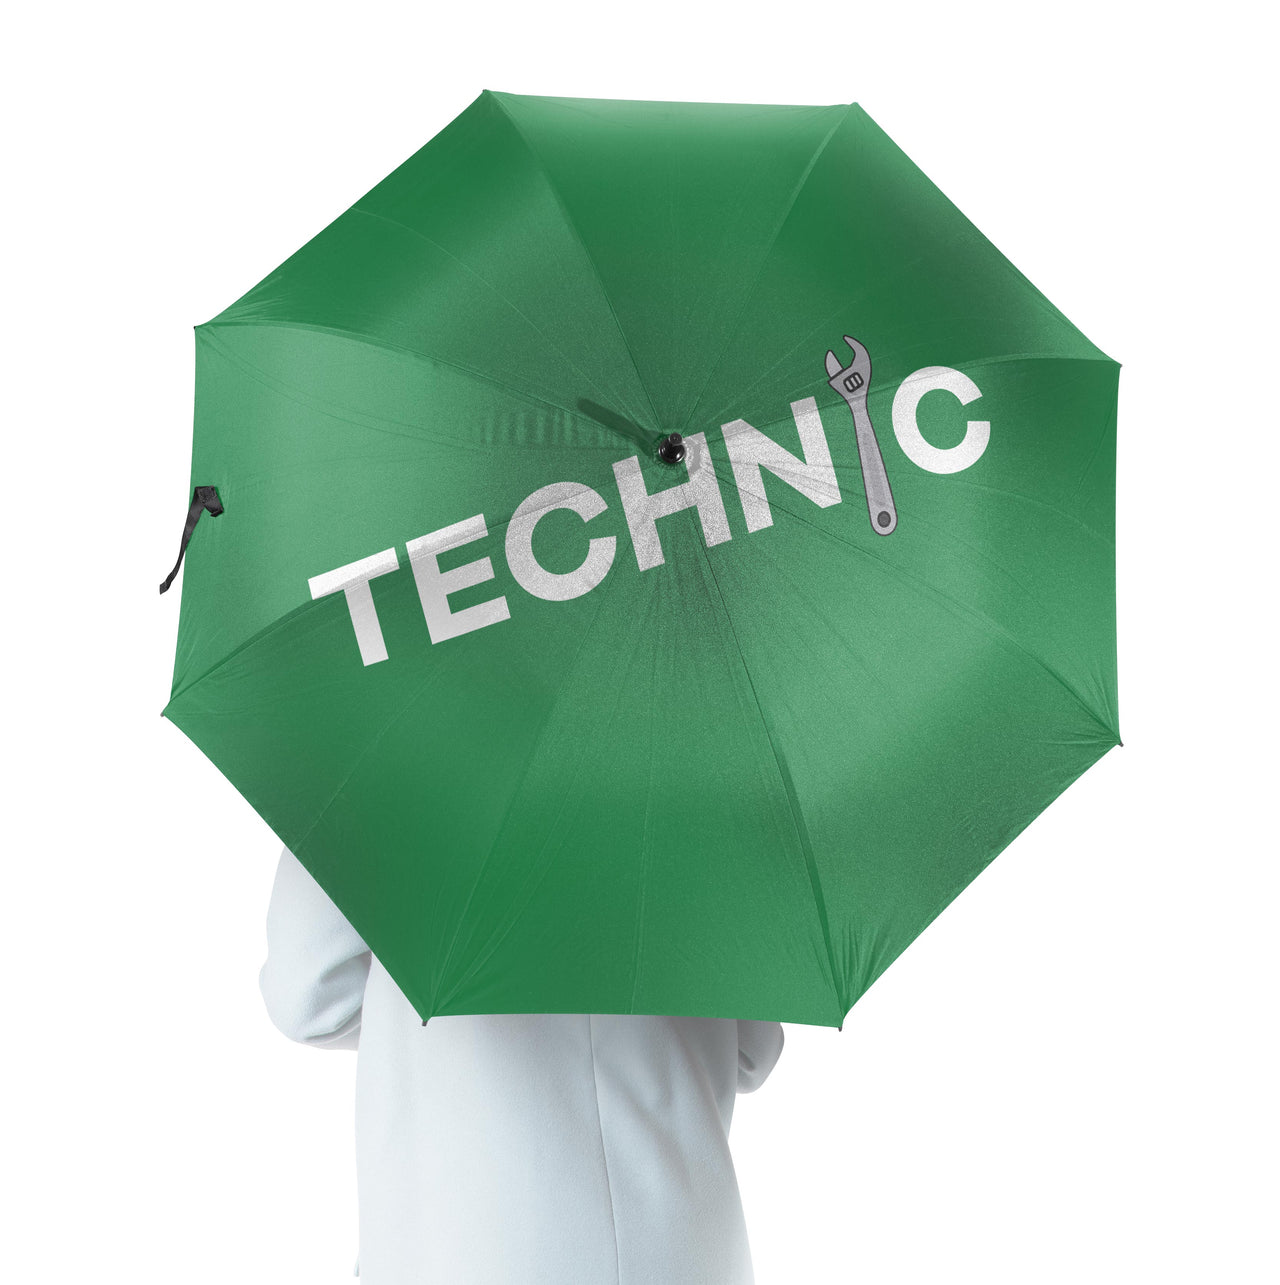 Technic Designed Umbrella